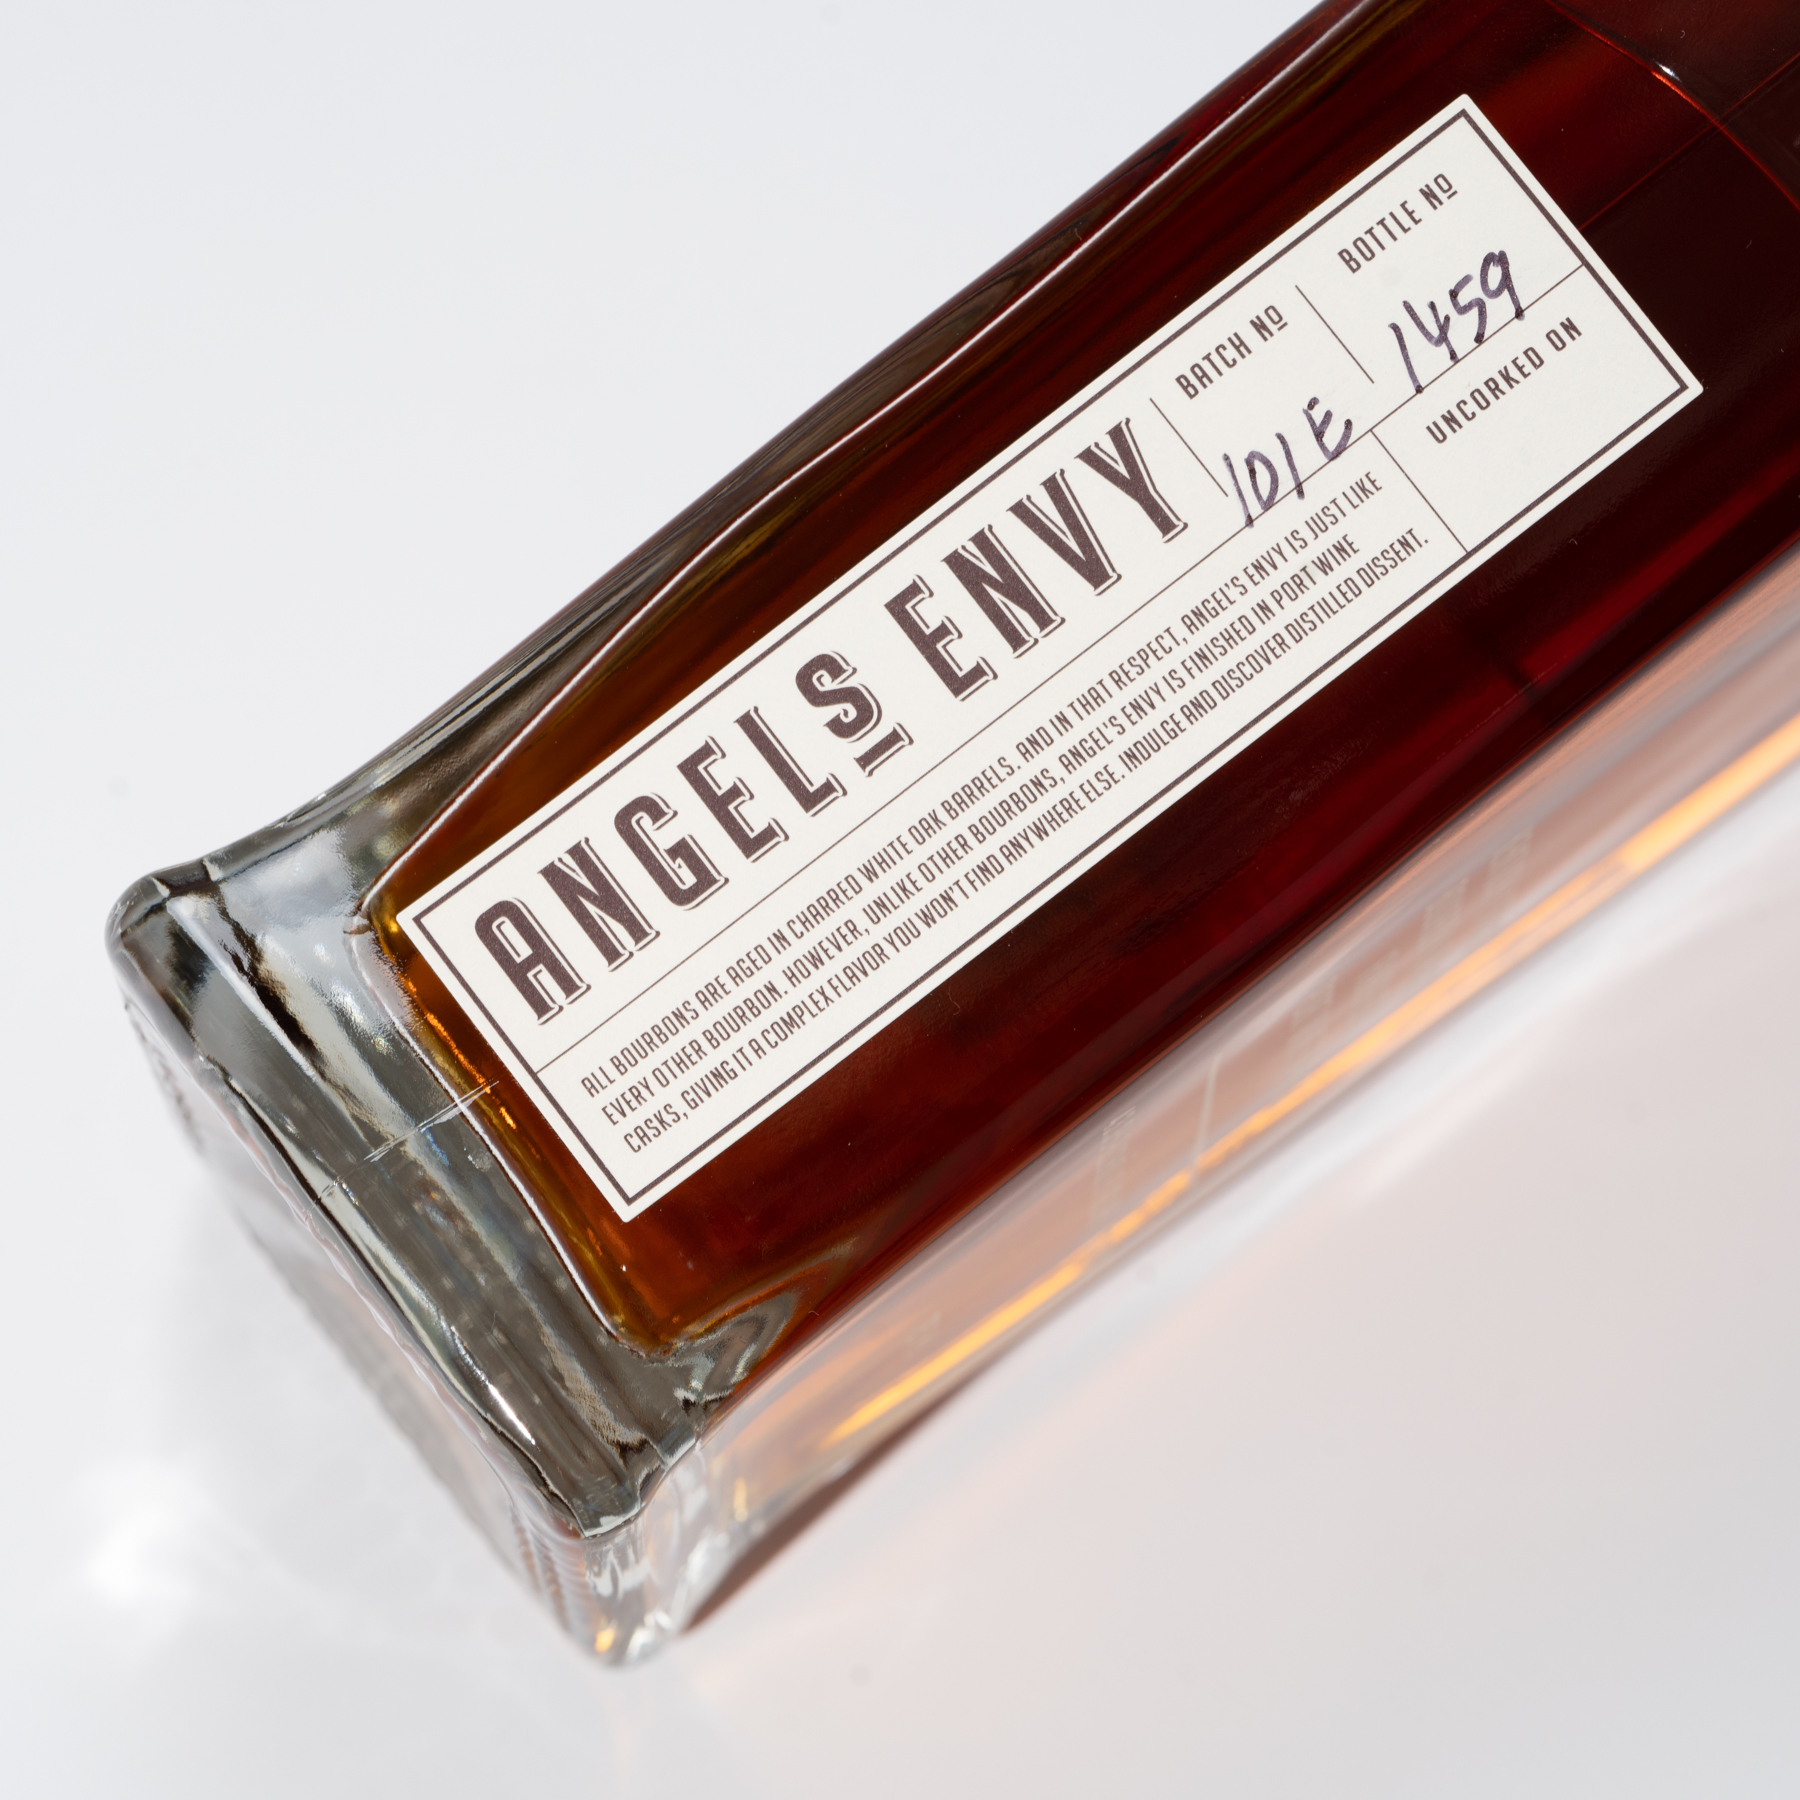 Angel's Envy Bourbon Finished in Port Wine Barrels 3